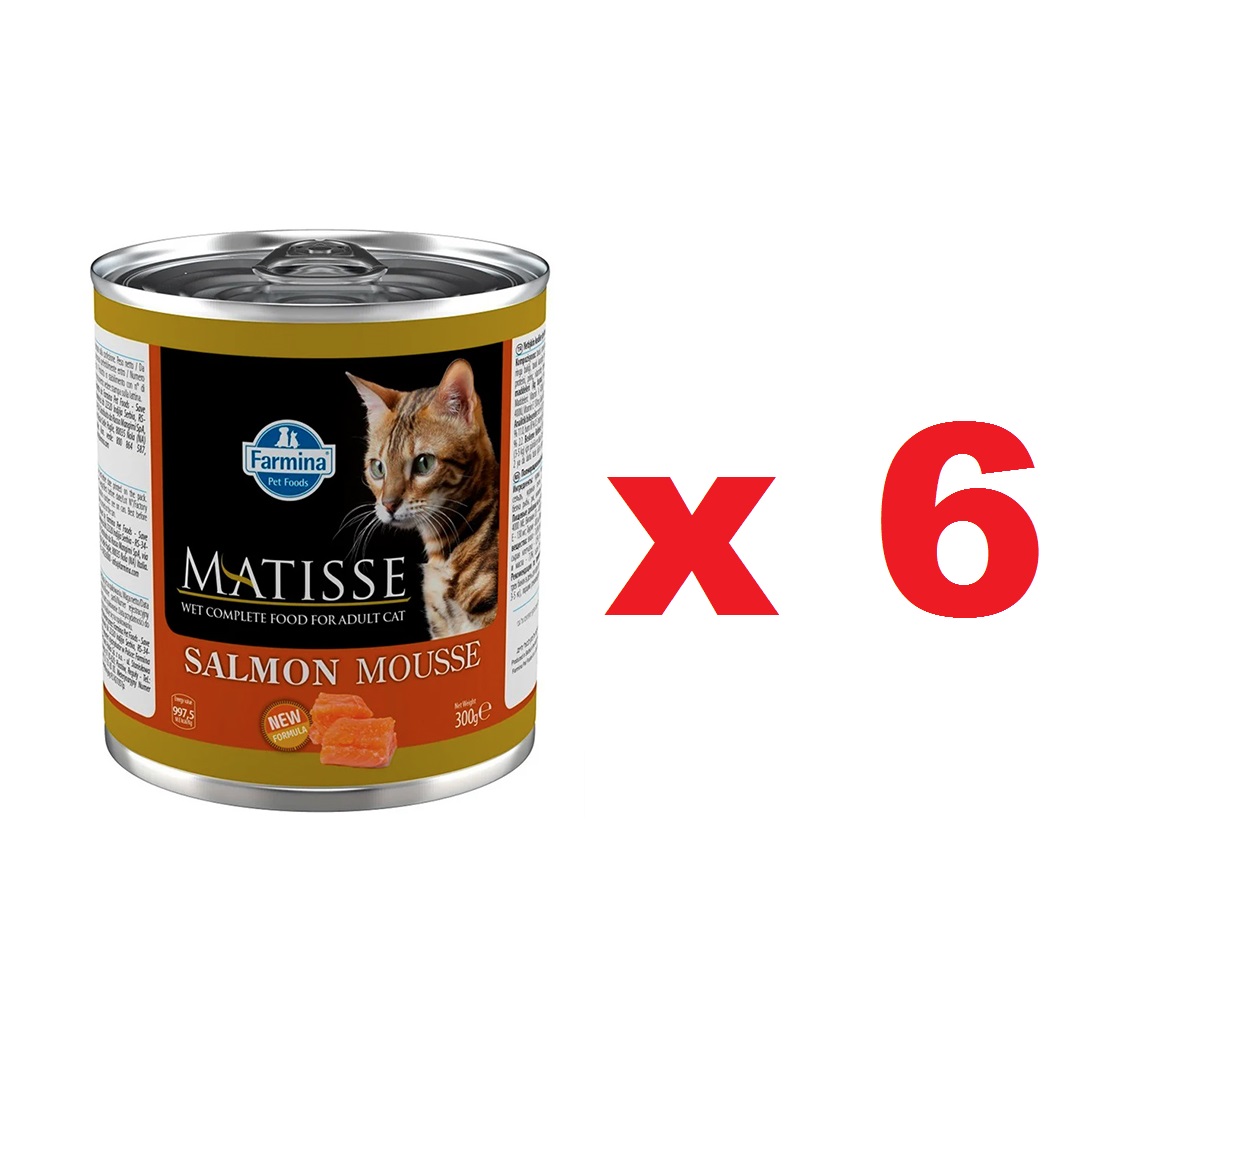 Матис 300гр мусс для кошек - Лосось (Matisse), 1коробка = 6штук